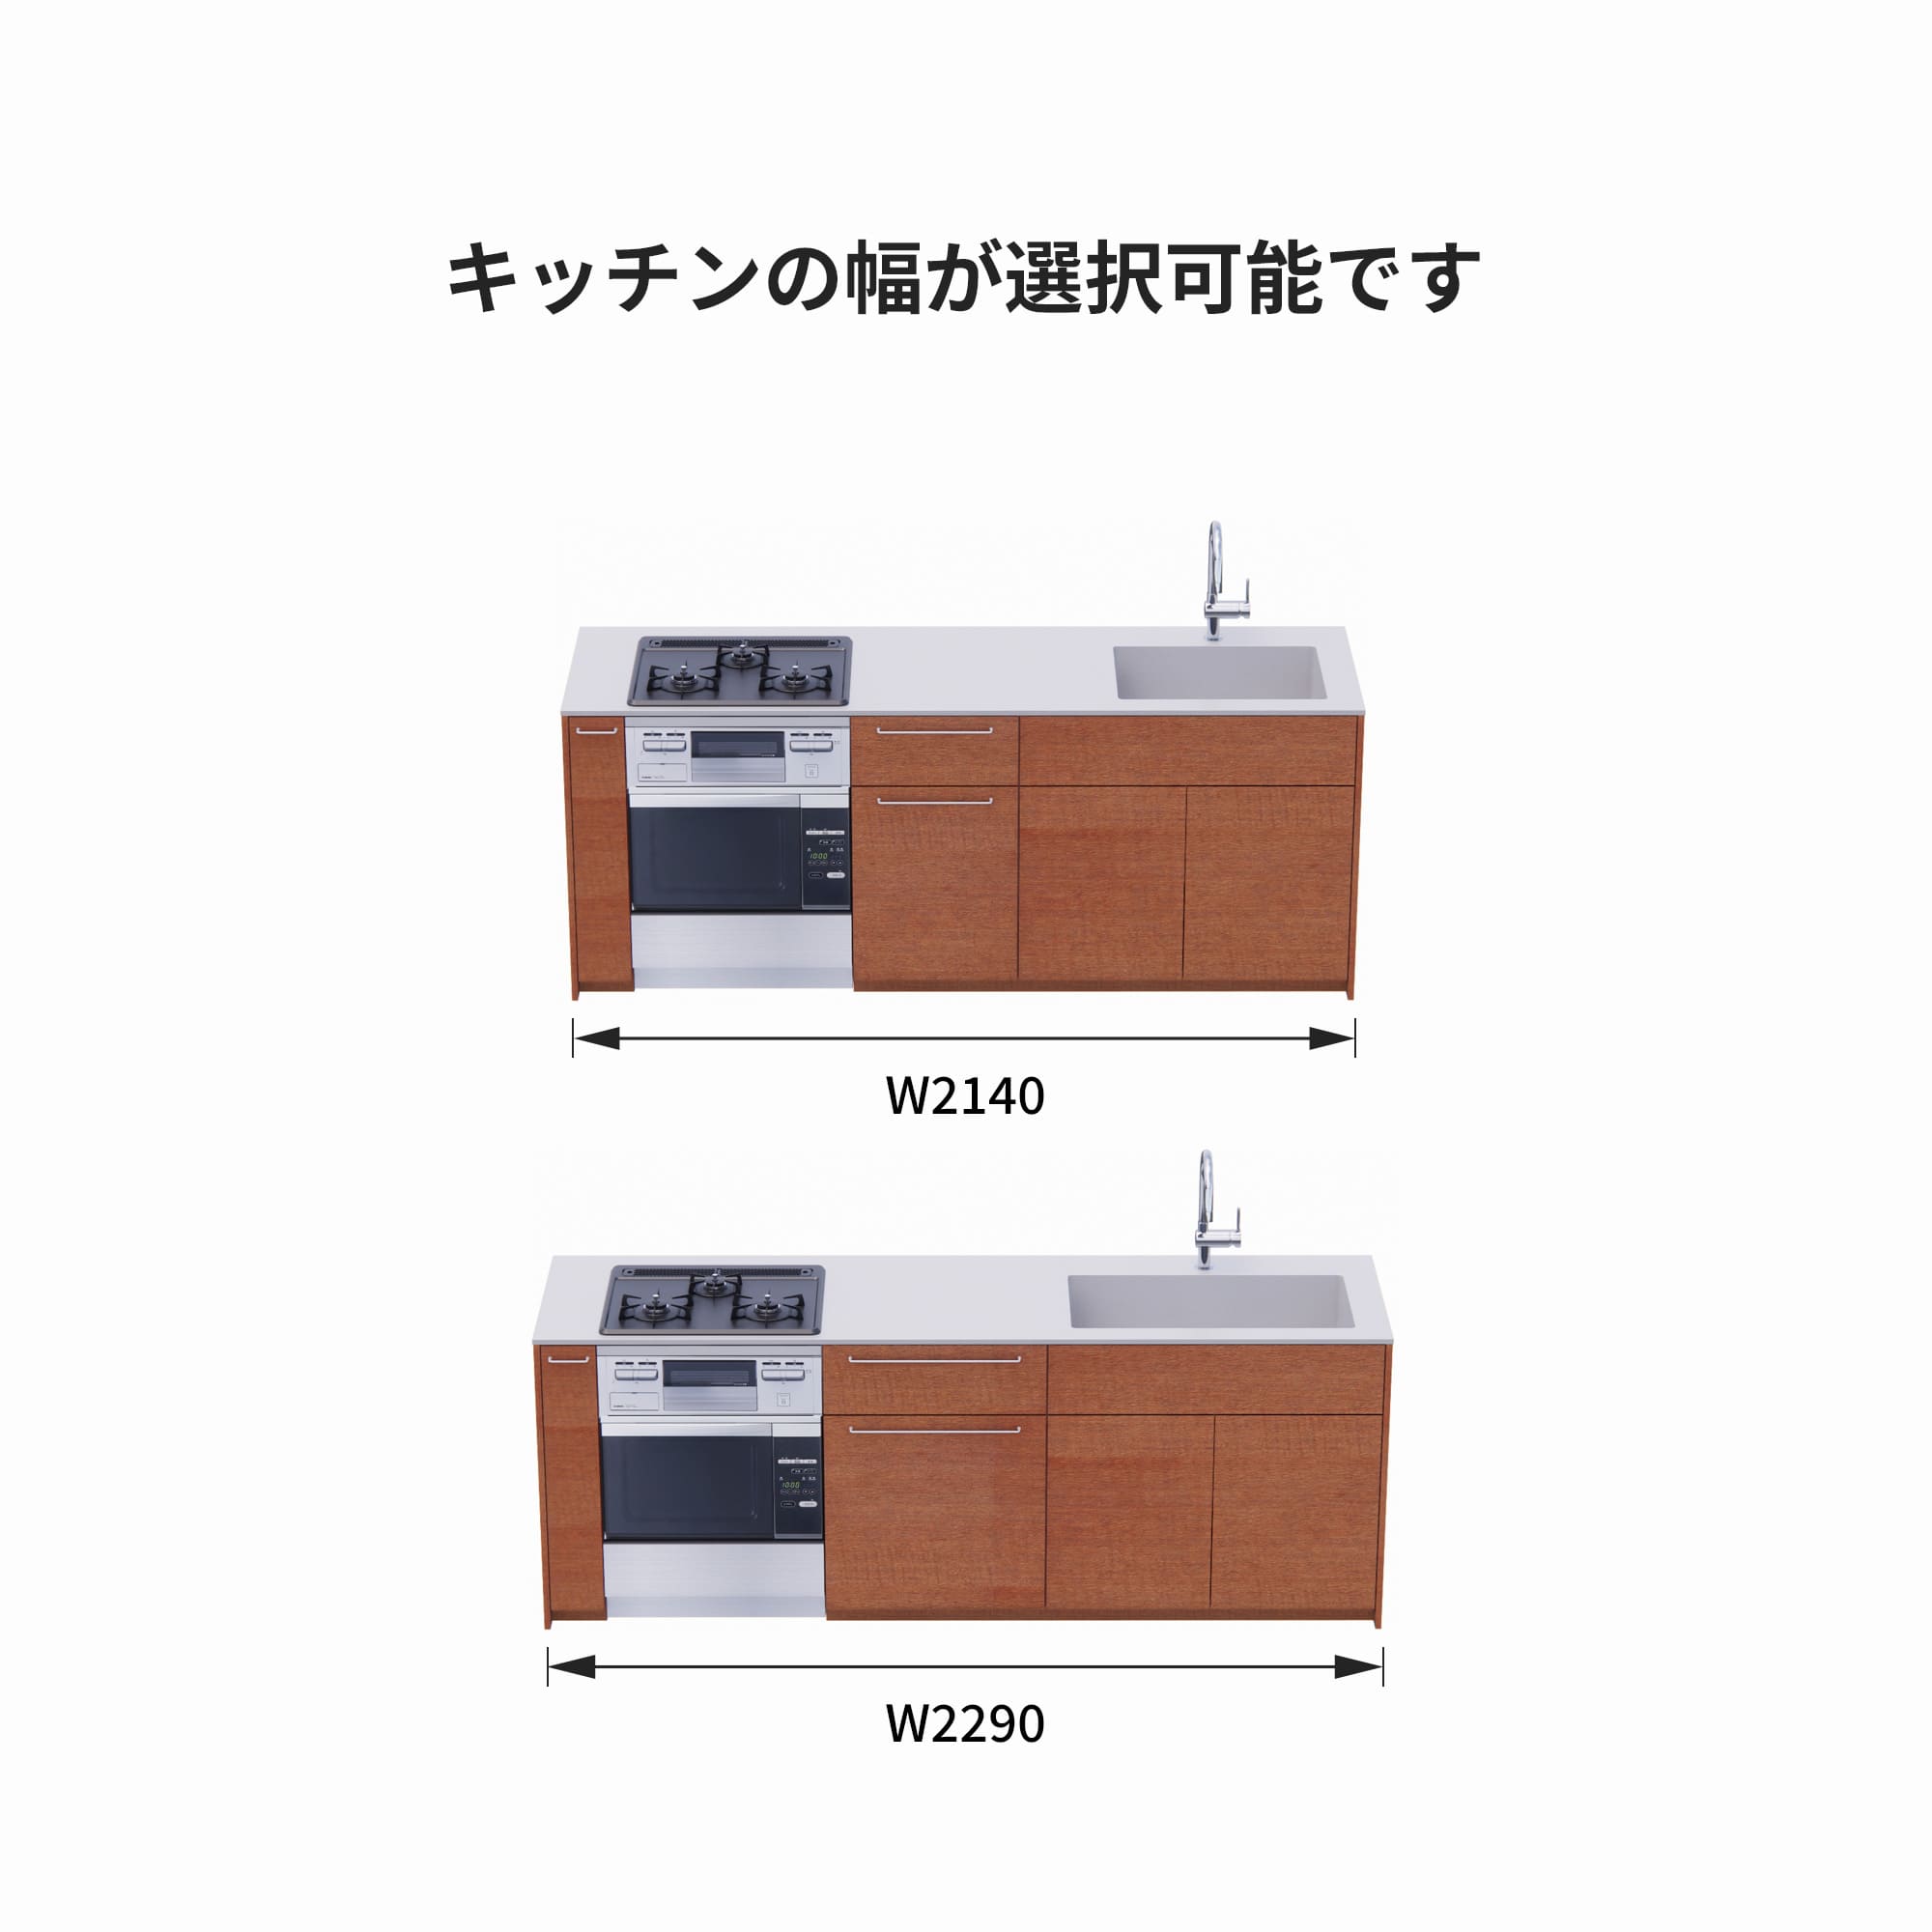 木製システムキッチン 壁付け型 W2140～2290・コンロあり / オーブンあり / 食洗機なし KB-KC022-19-G183 サイズはW2140と2290から選択可能です